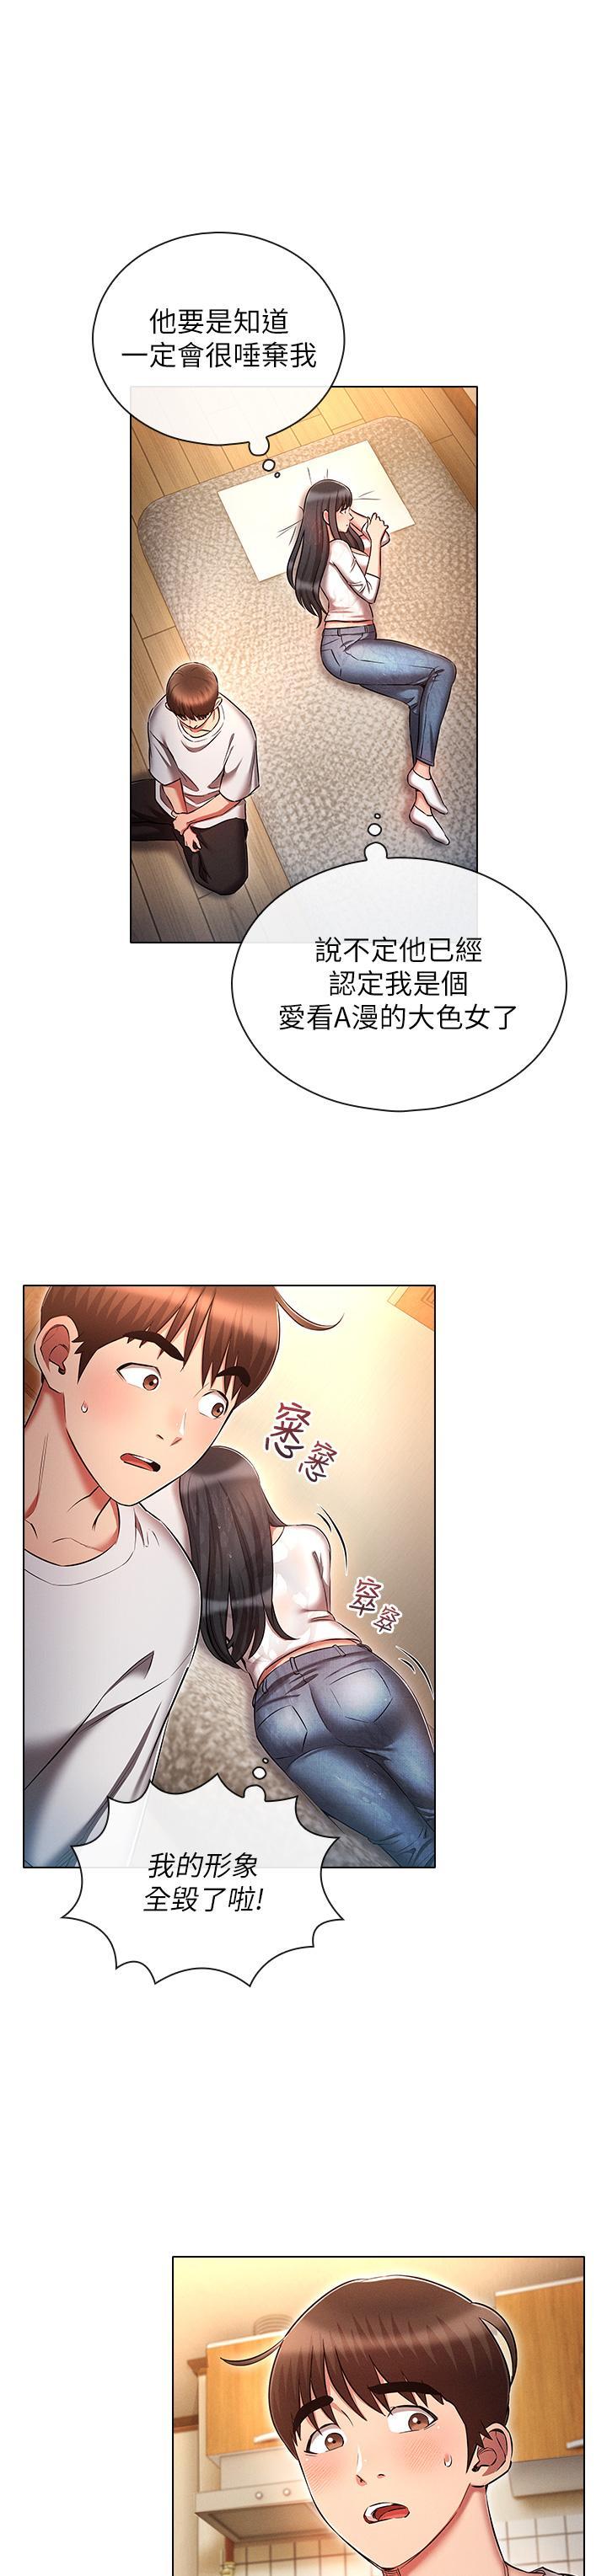 韩国污漫画 魯蛇的多重宇宙 第45话 我要被开苞了吗?! 15